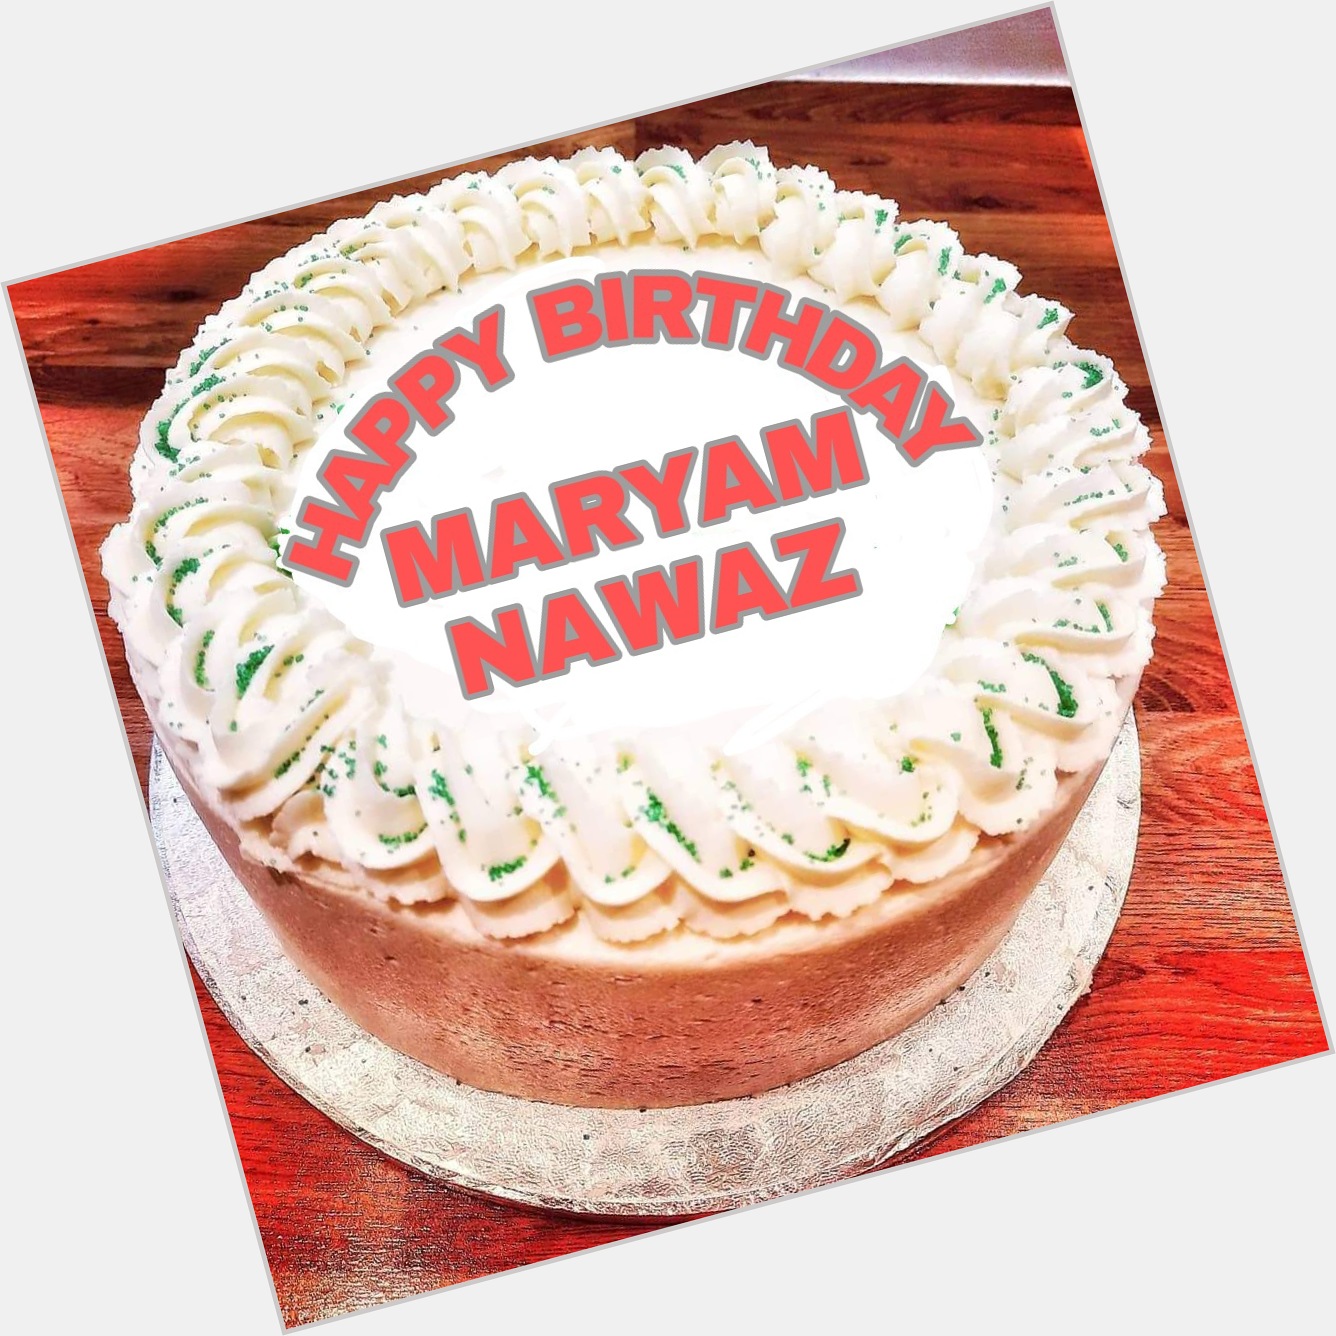  Happy Birthday to you Maryam Nawaz Sharif 